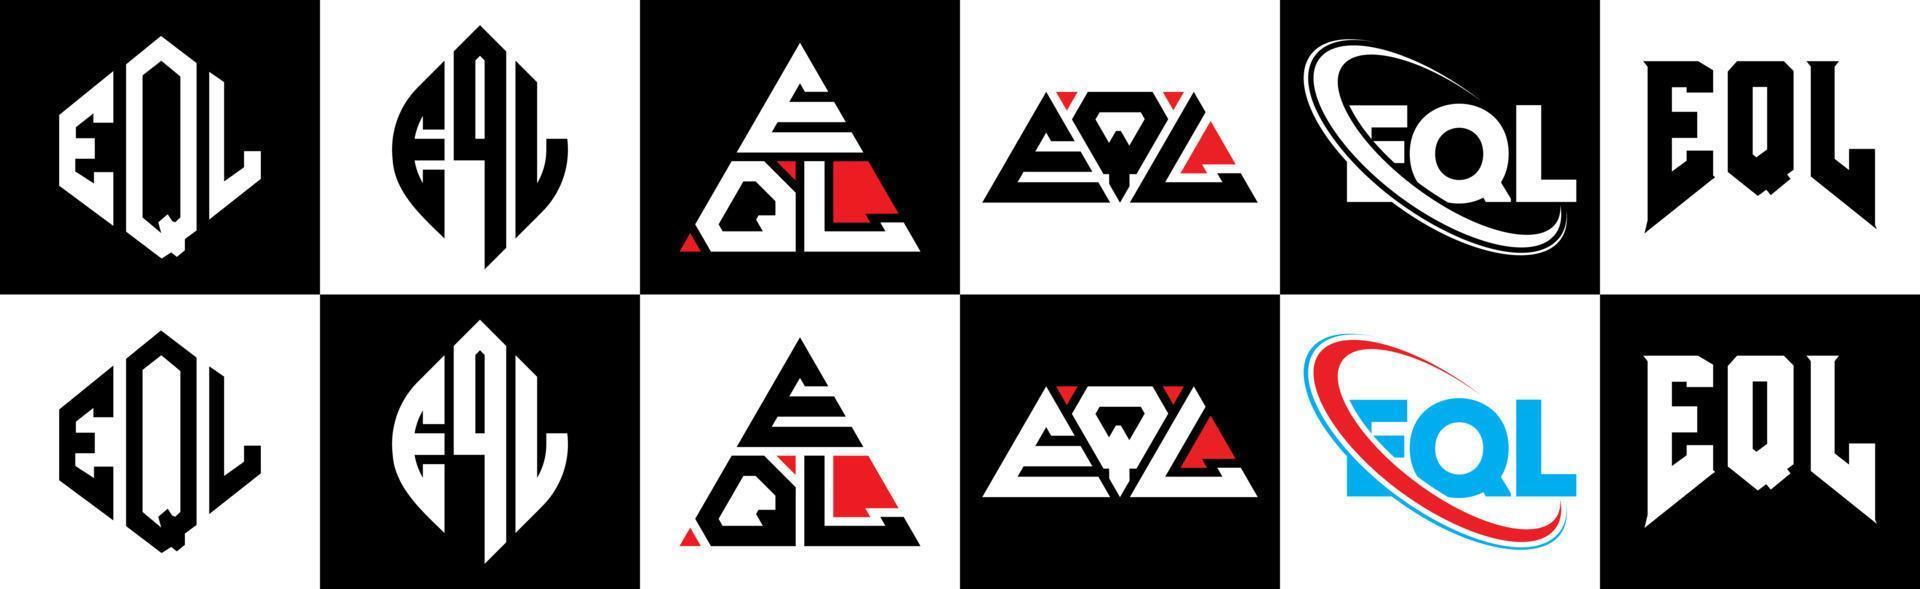 Diseño de logotipo de letra eql en seis estilos. eql polígono, círculo, triángulo, hexágono, estilo plano y simple con logotipo de letra de variación de color blanco y negro en una mesa de trabajo. logotipo minimalista y clásico de eql vector